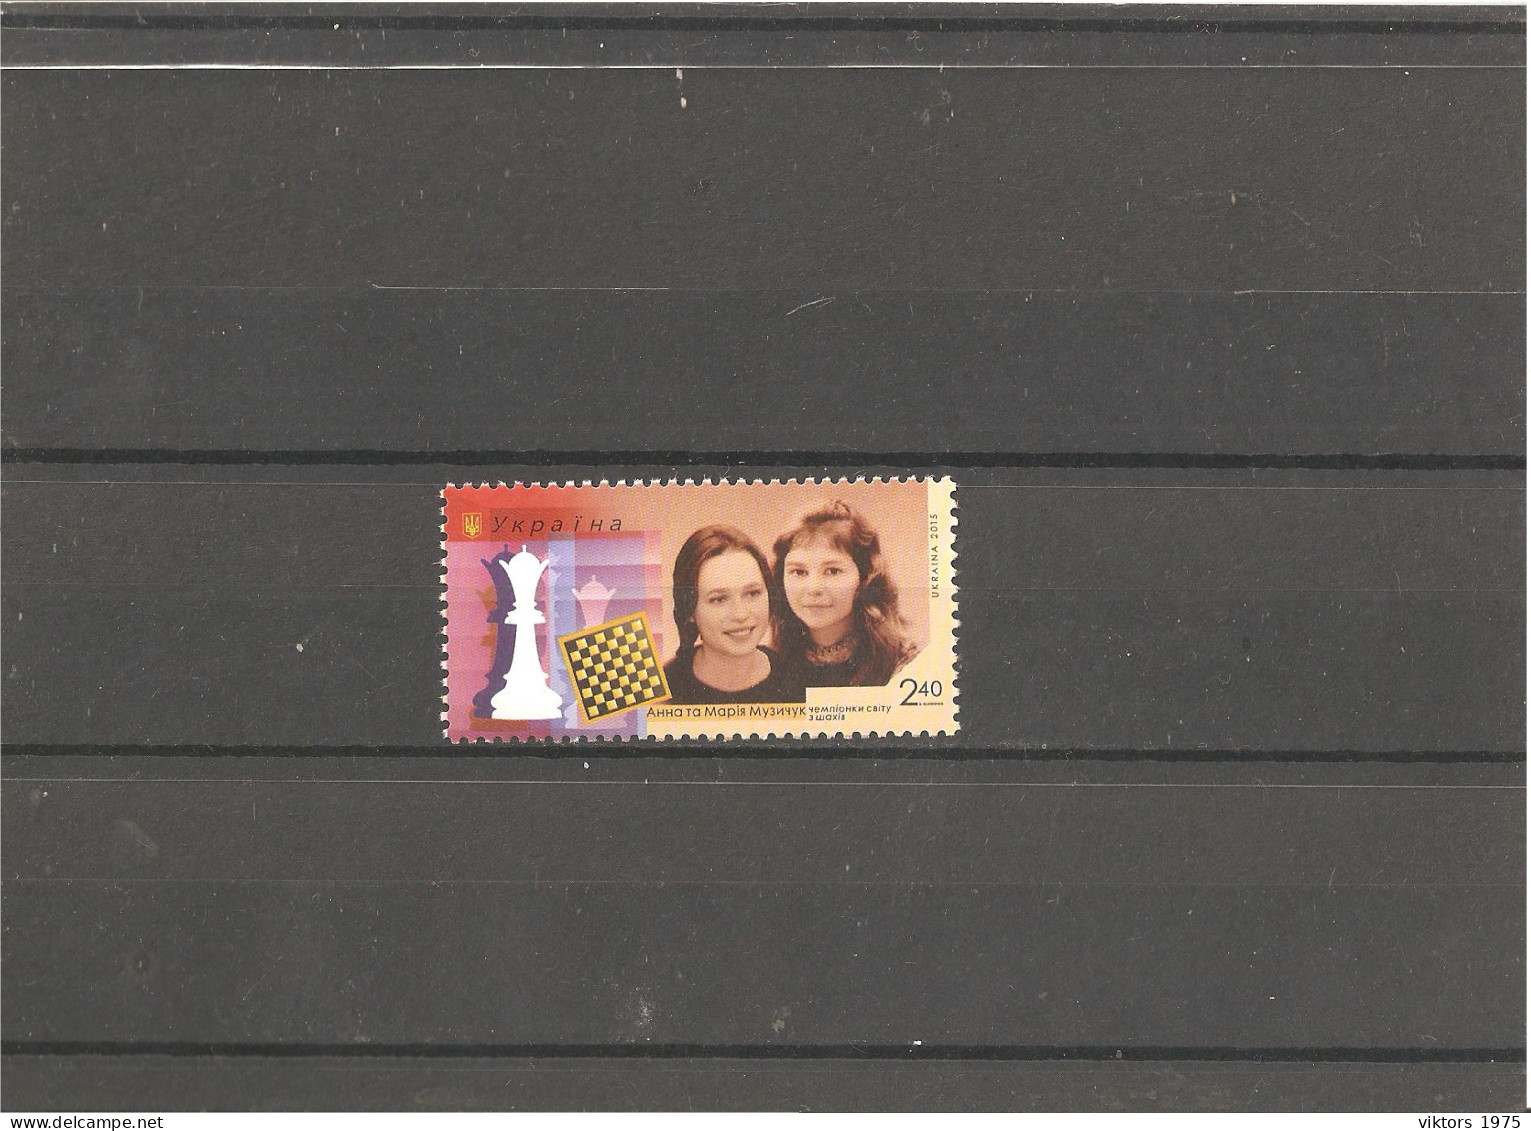 MNH Stamp Nr.1511 In MICHEL Catalog - Ukraine